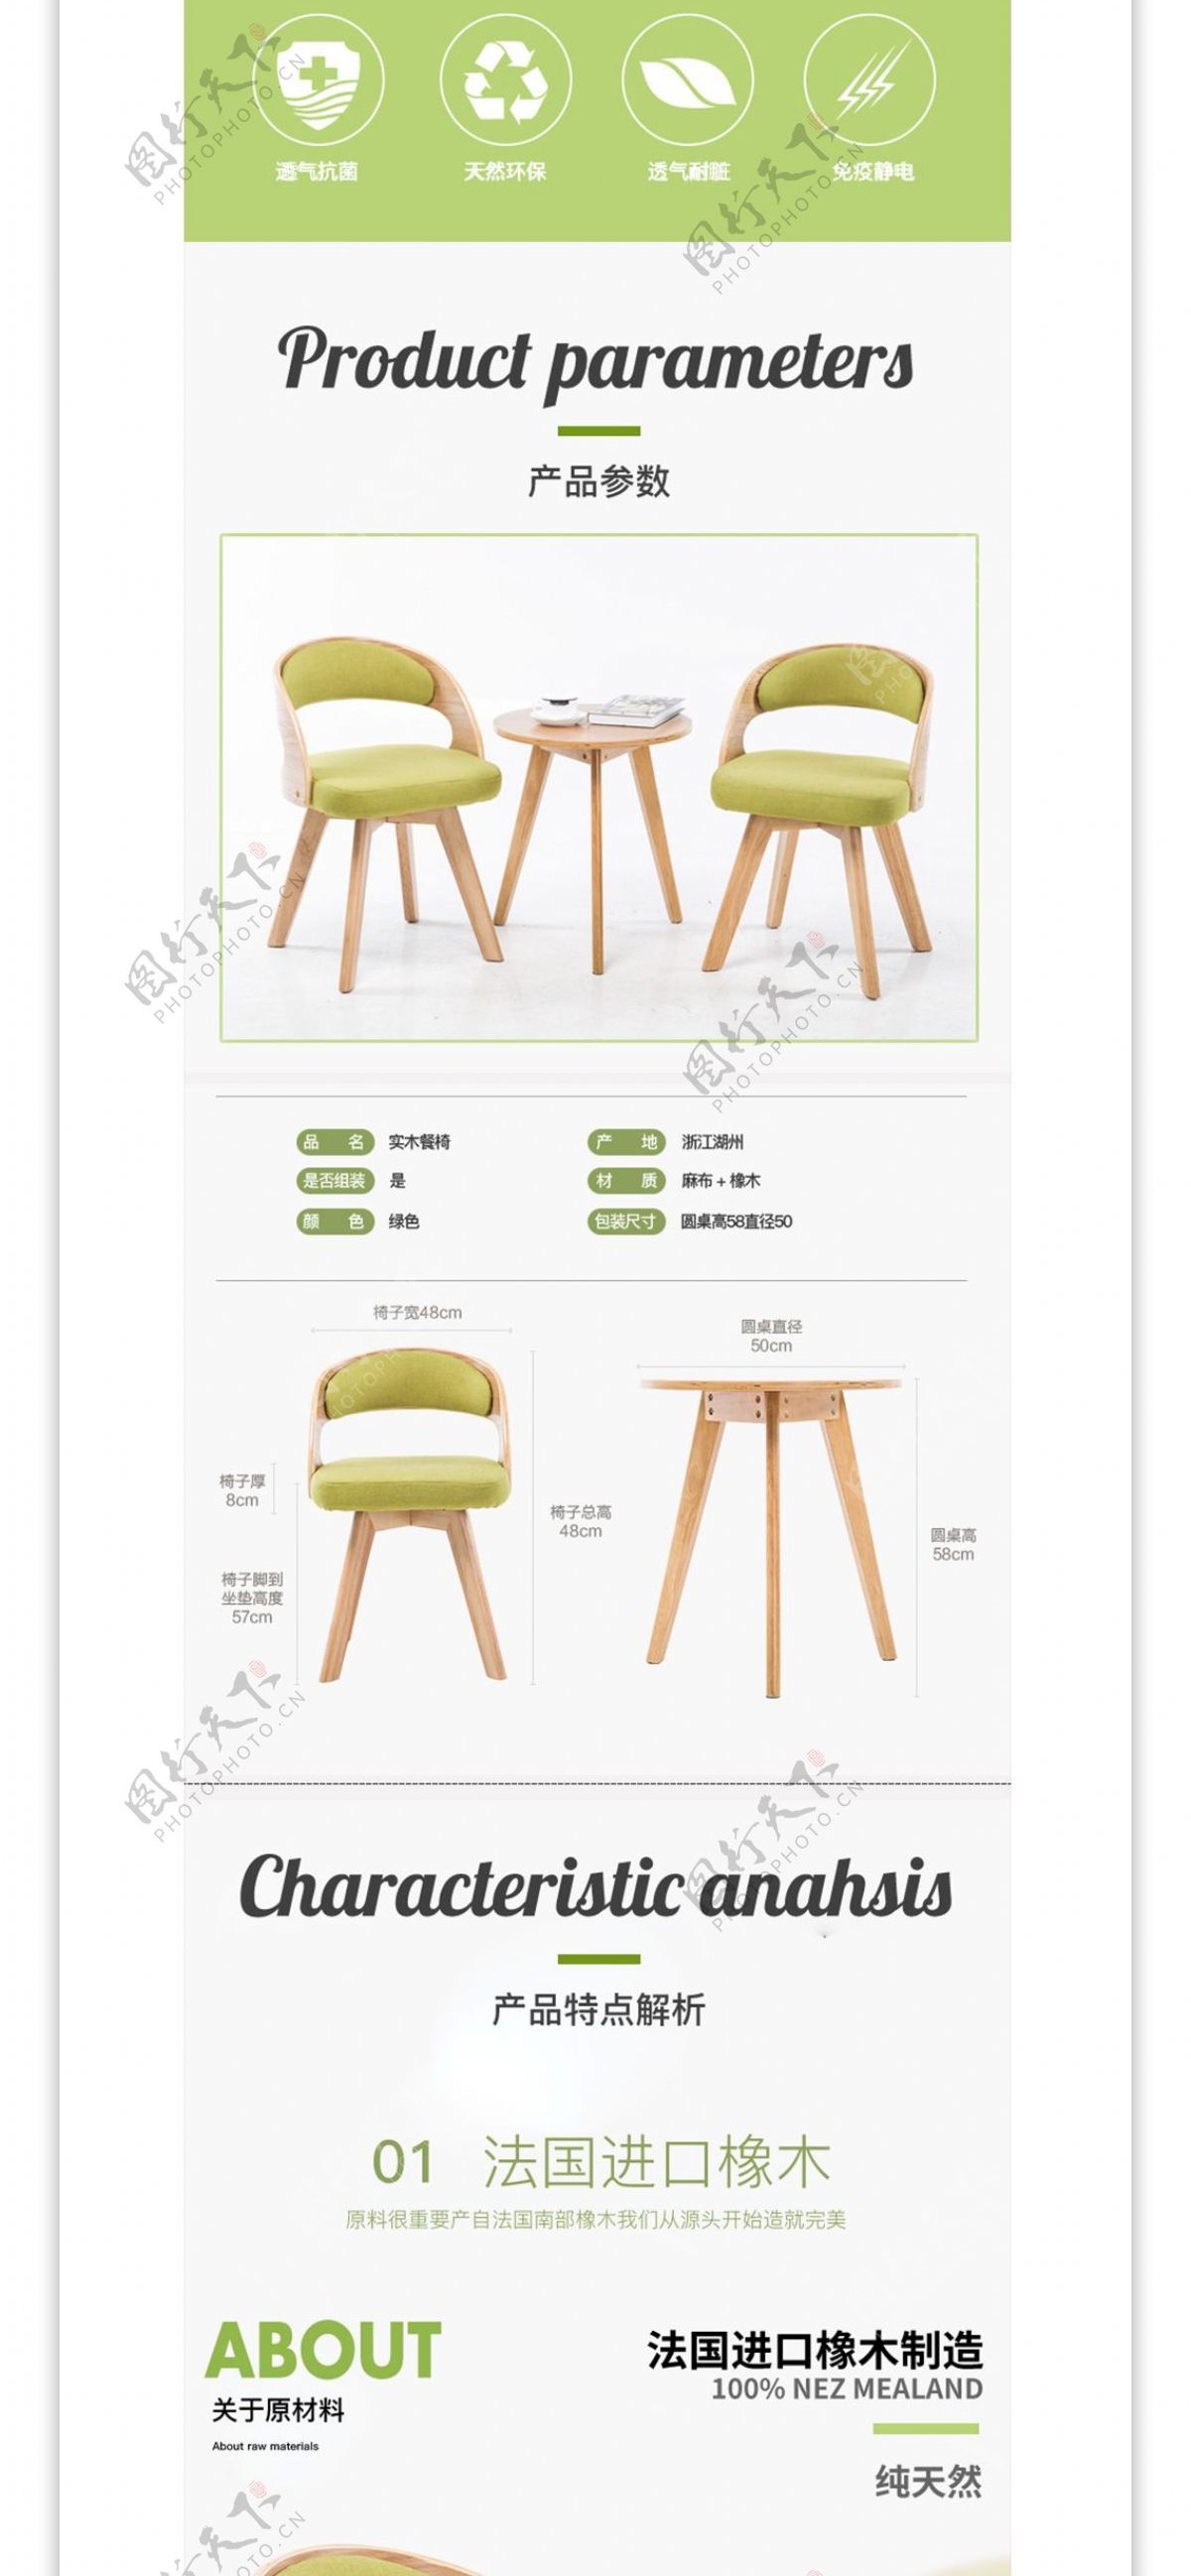 家具高点击率桌子凳子椅子活动详情页模板